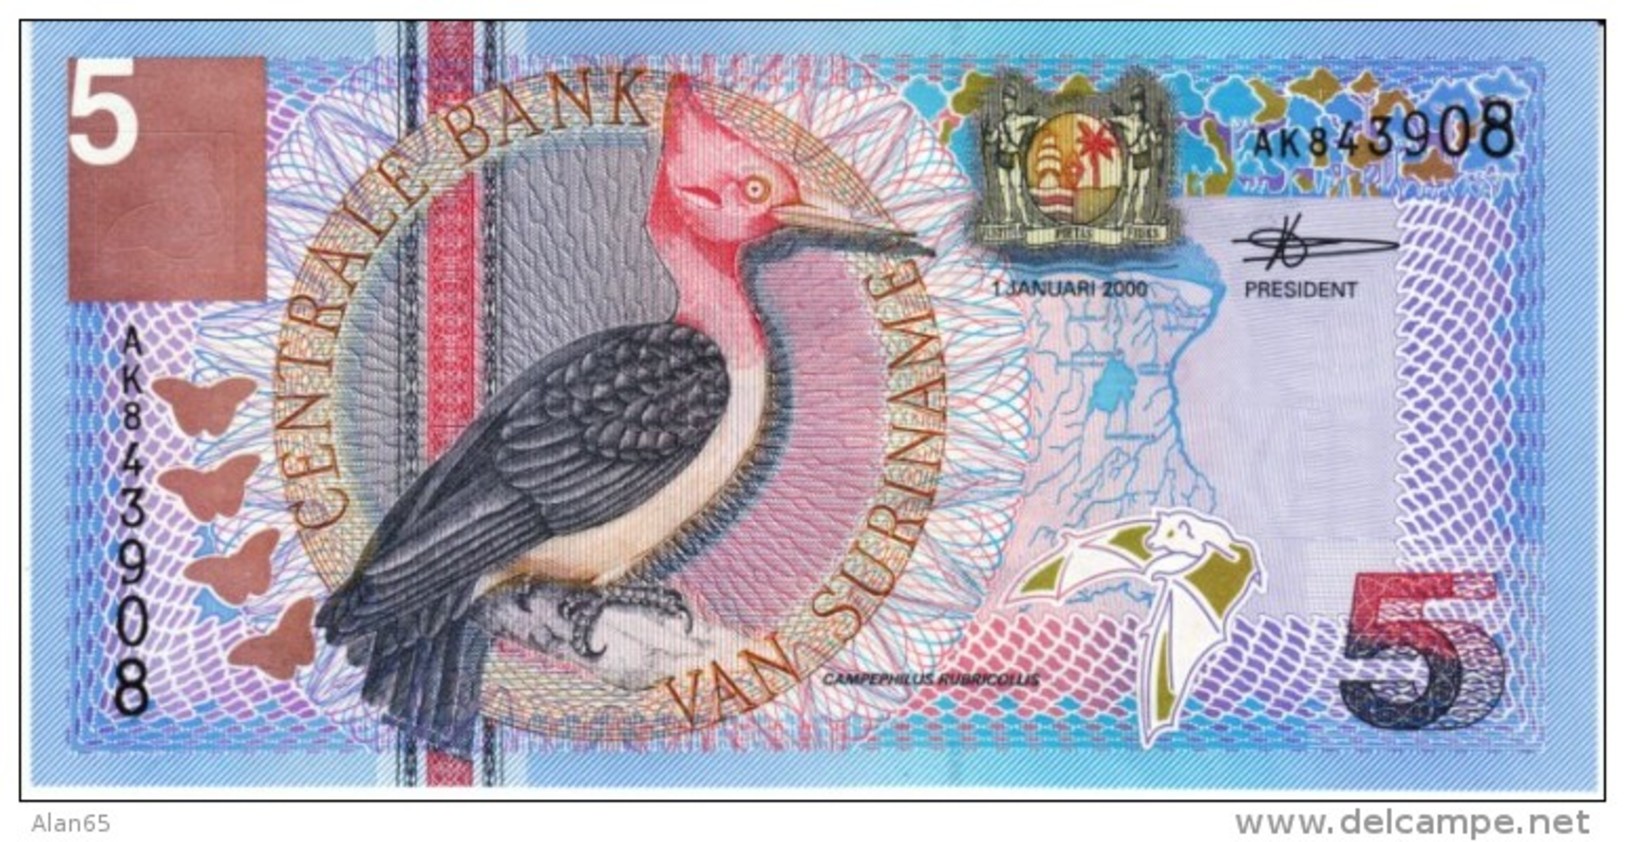 Suriname #146 5 Gulden 2000 Banknote Money Currency, Bird Flowers - Surinam